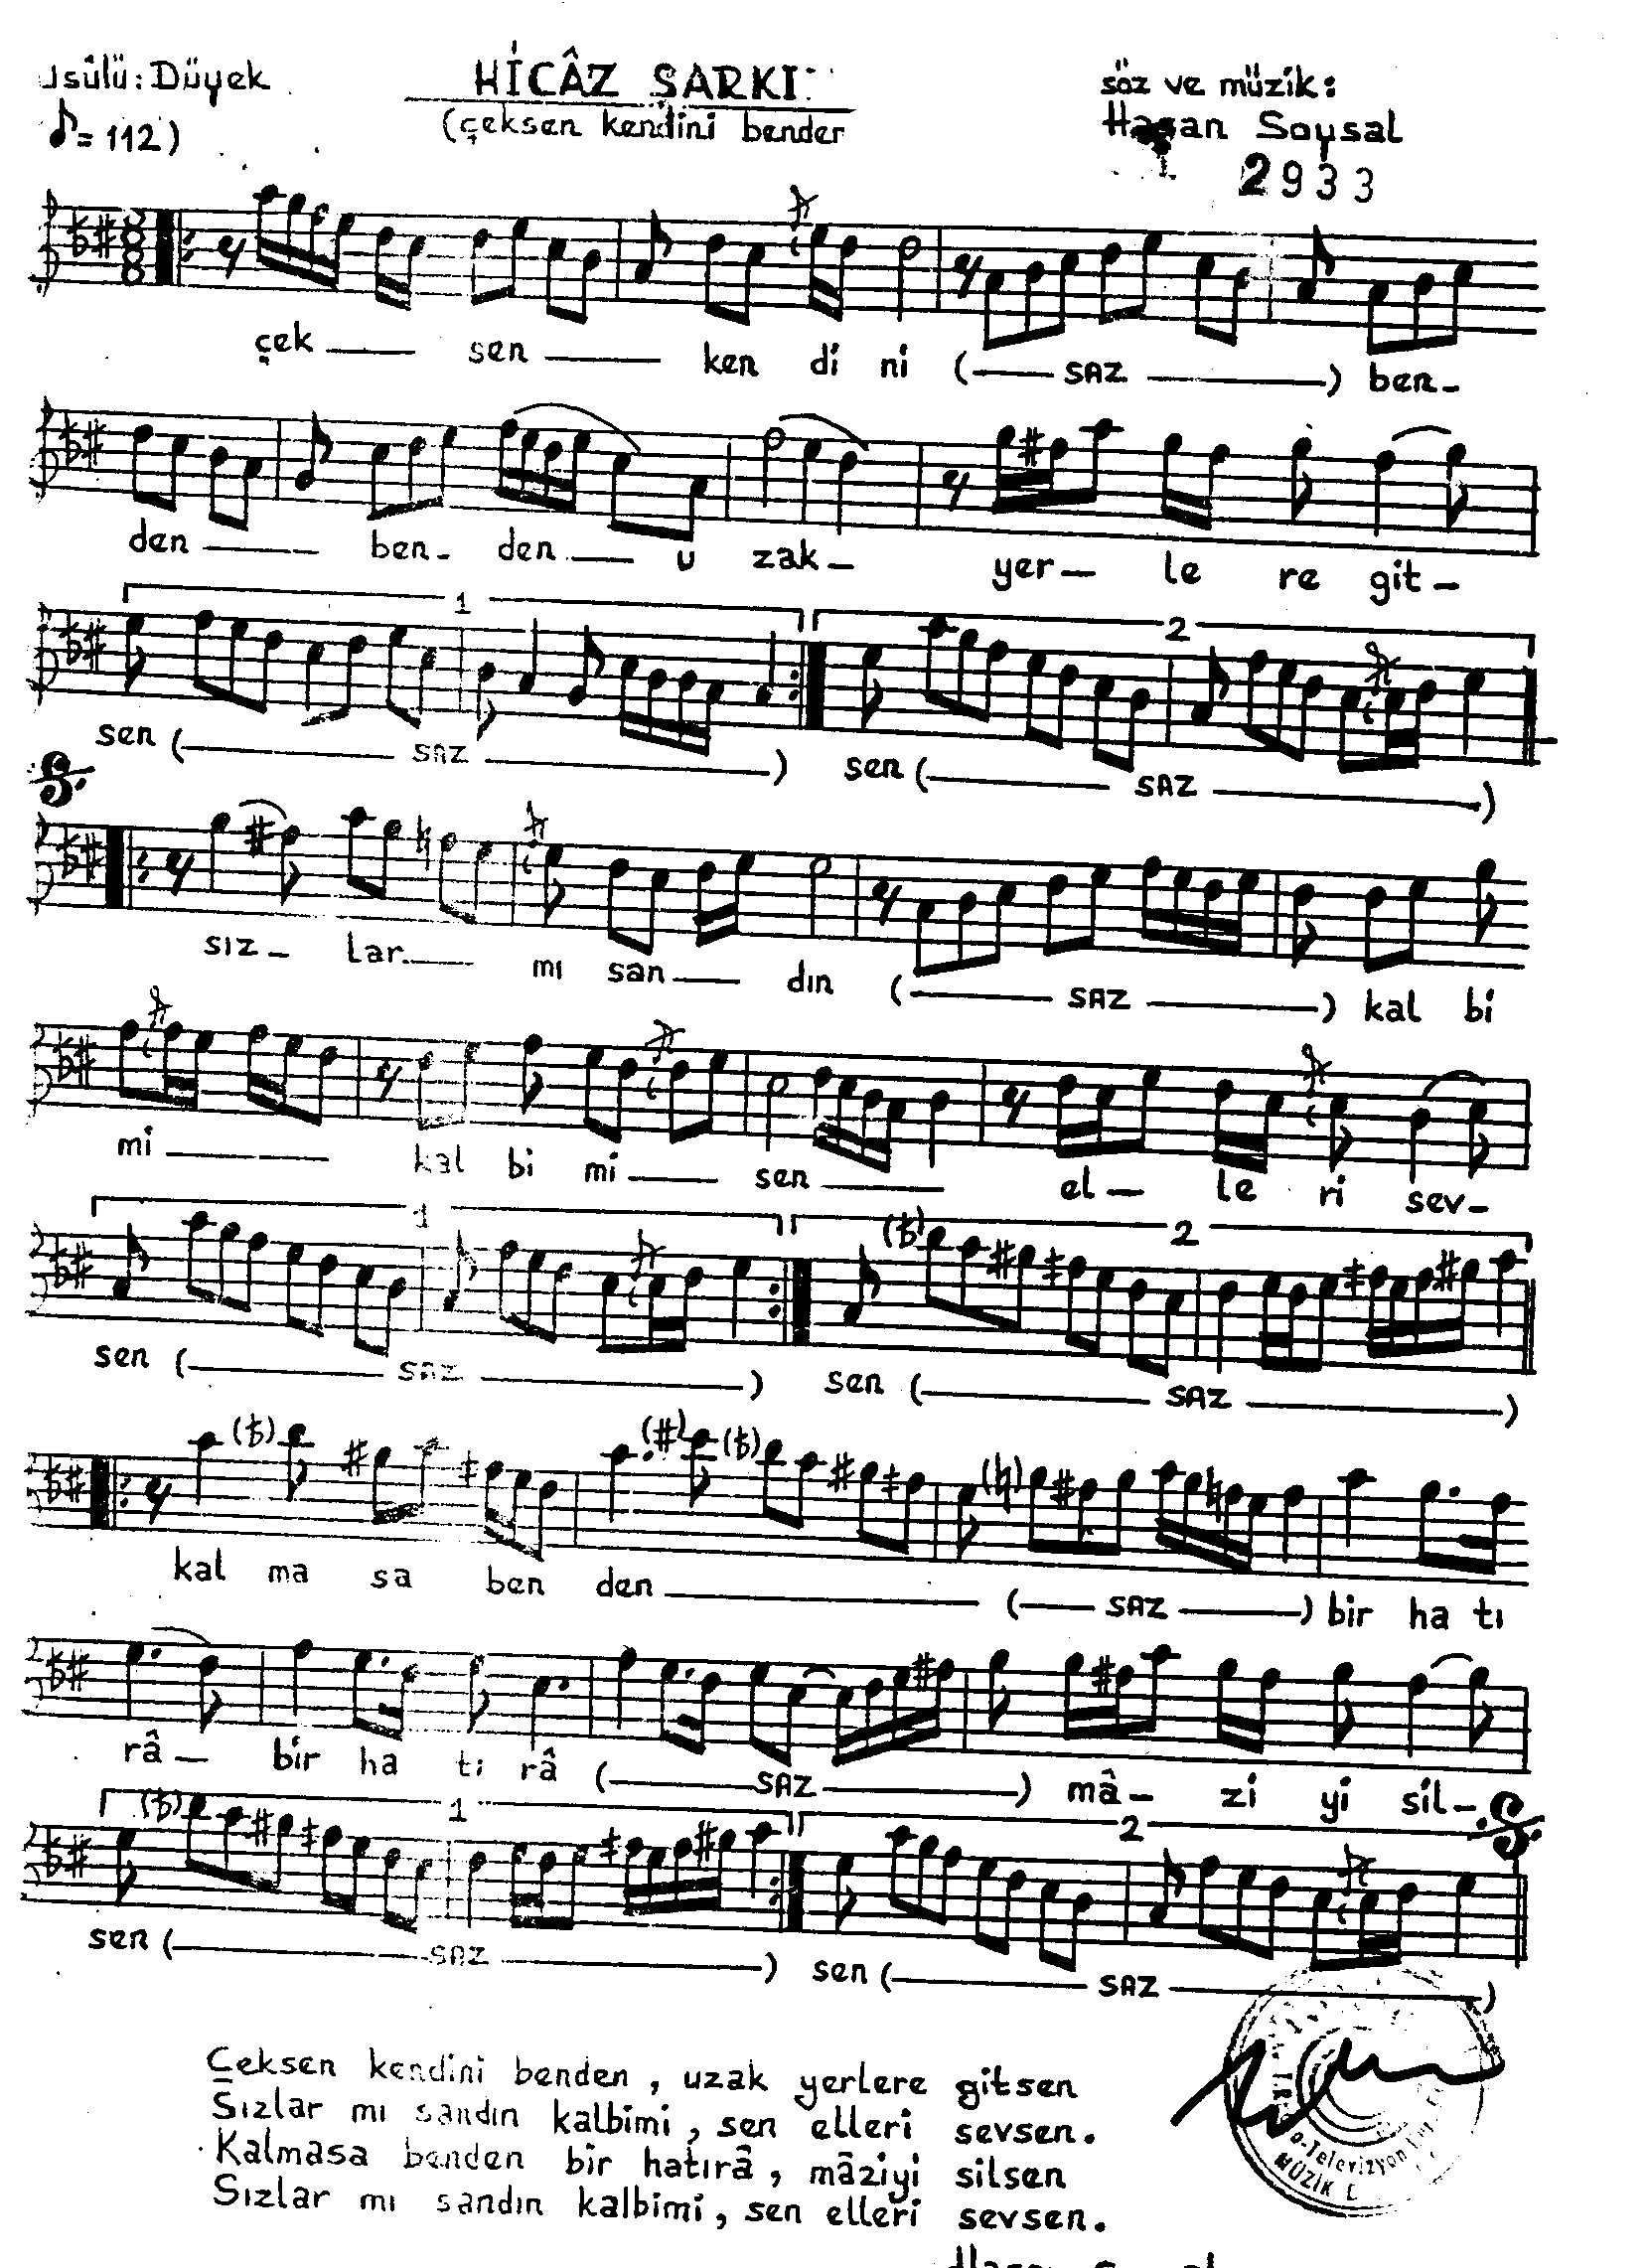 Hicâz - Şarkı - Hasan Soysal - Sayfa 1